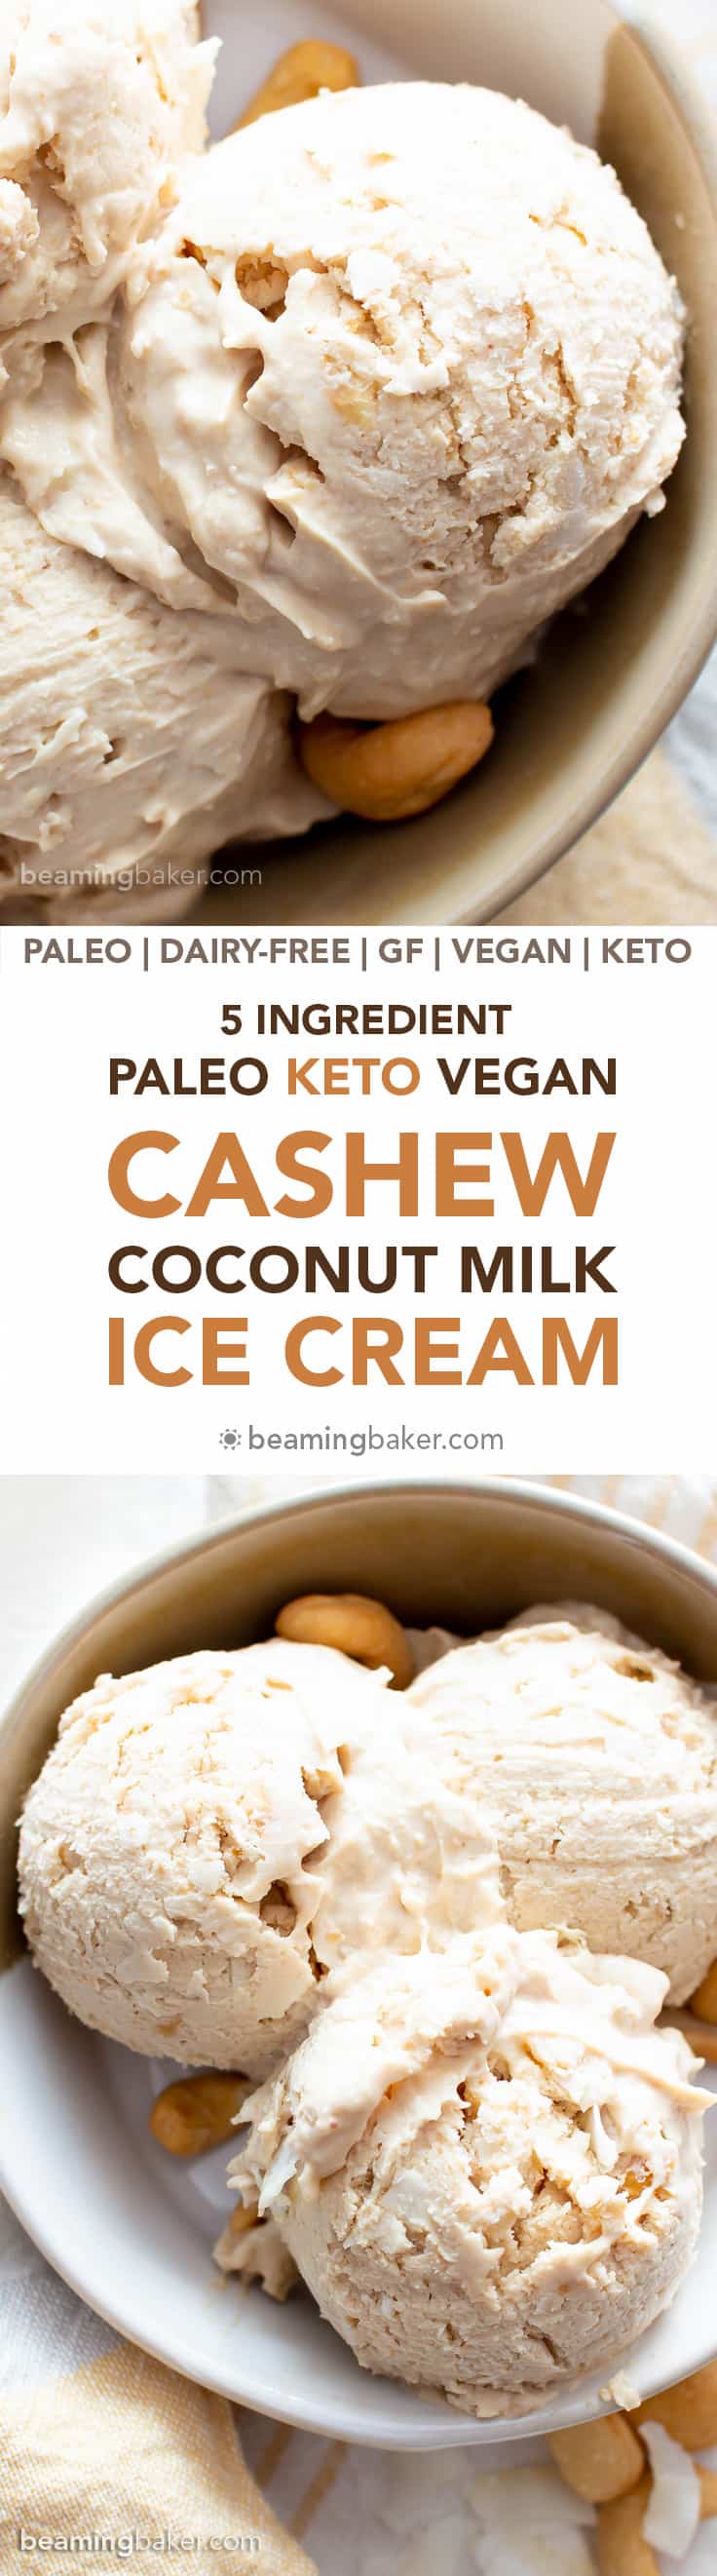 Homemade-Cashew-Coconut-Milk-Vegan-Ice-Cream-Paleo-Dairy-Free-Keto-%E2%80%93-5-Ingredient.jpg